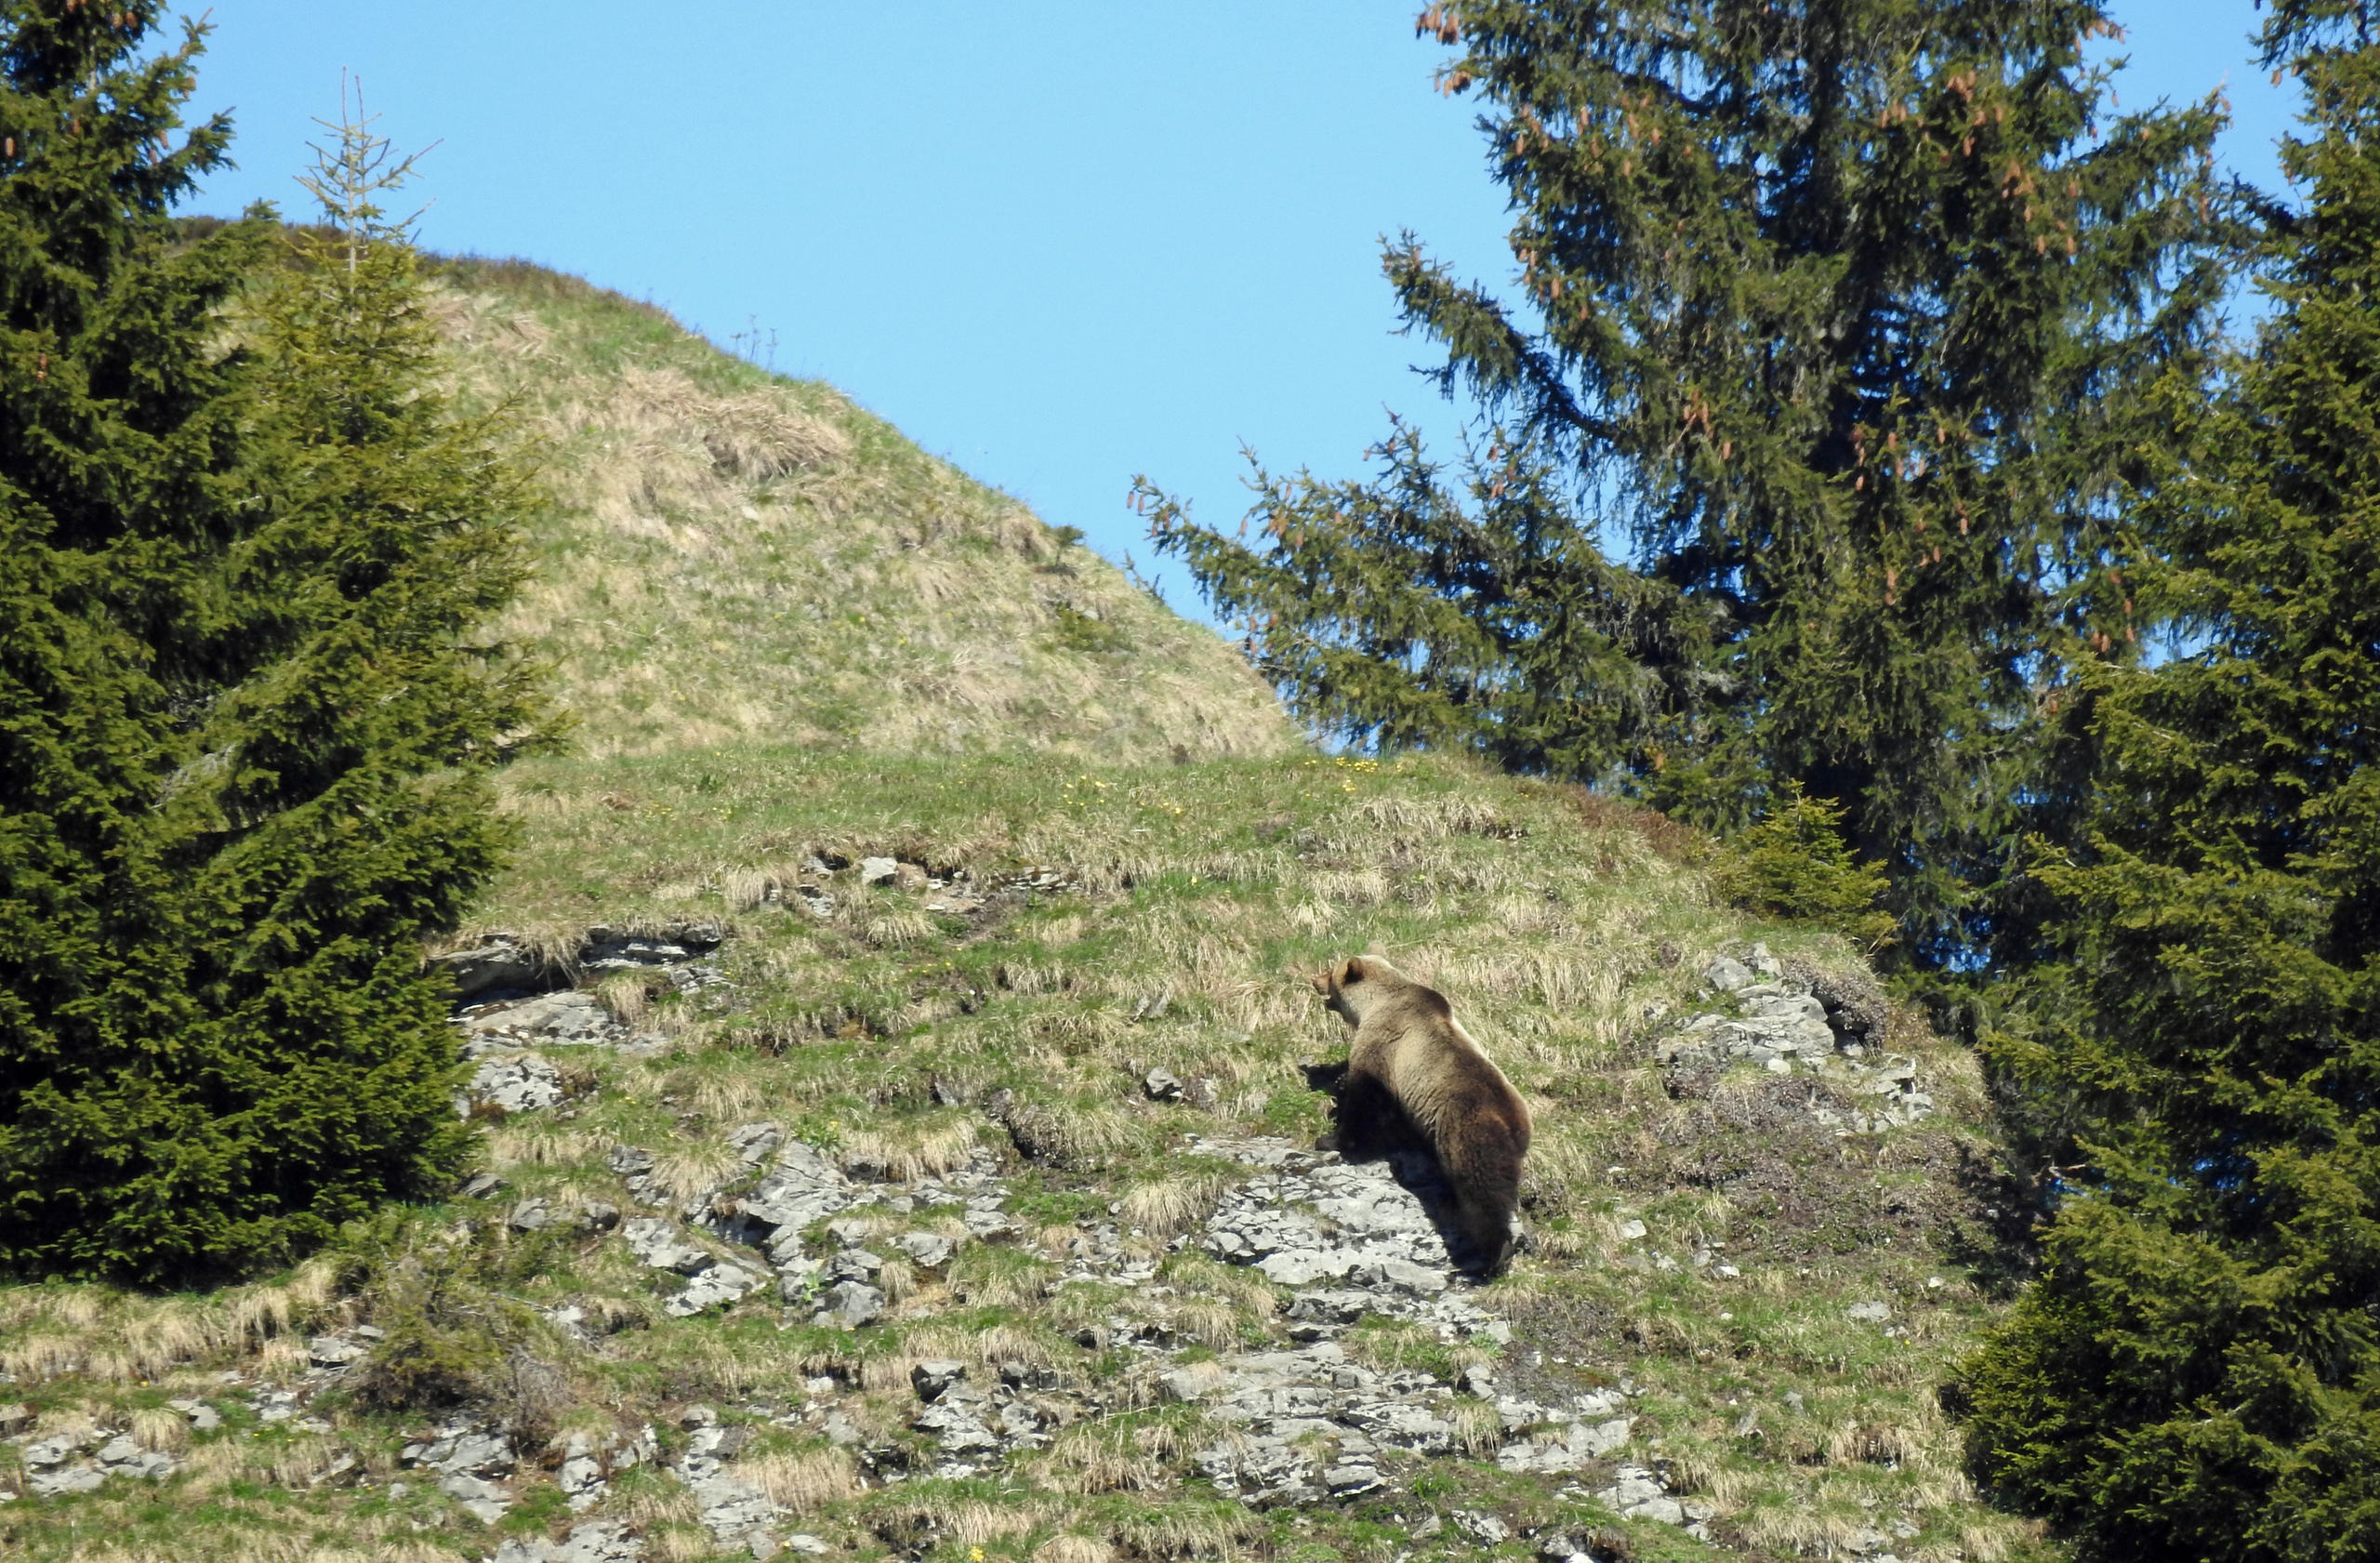 O urso subindo uma montanha